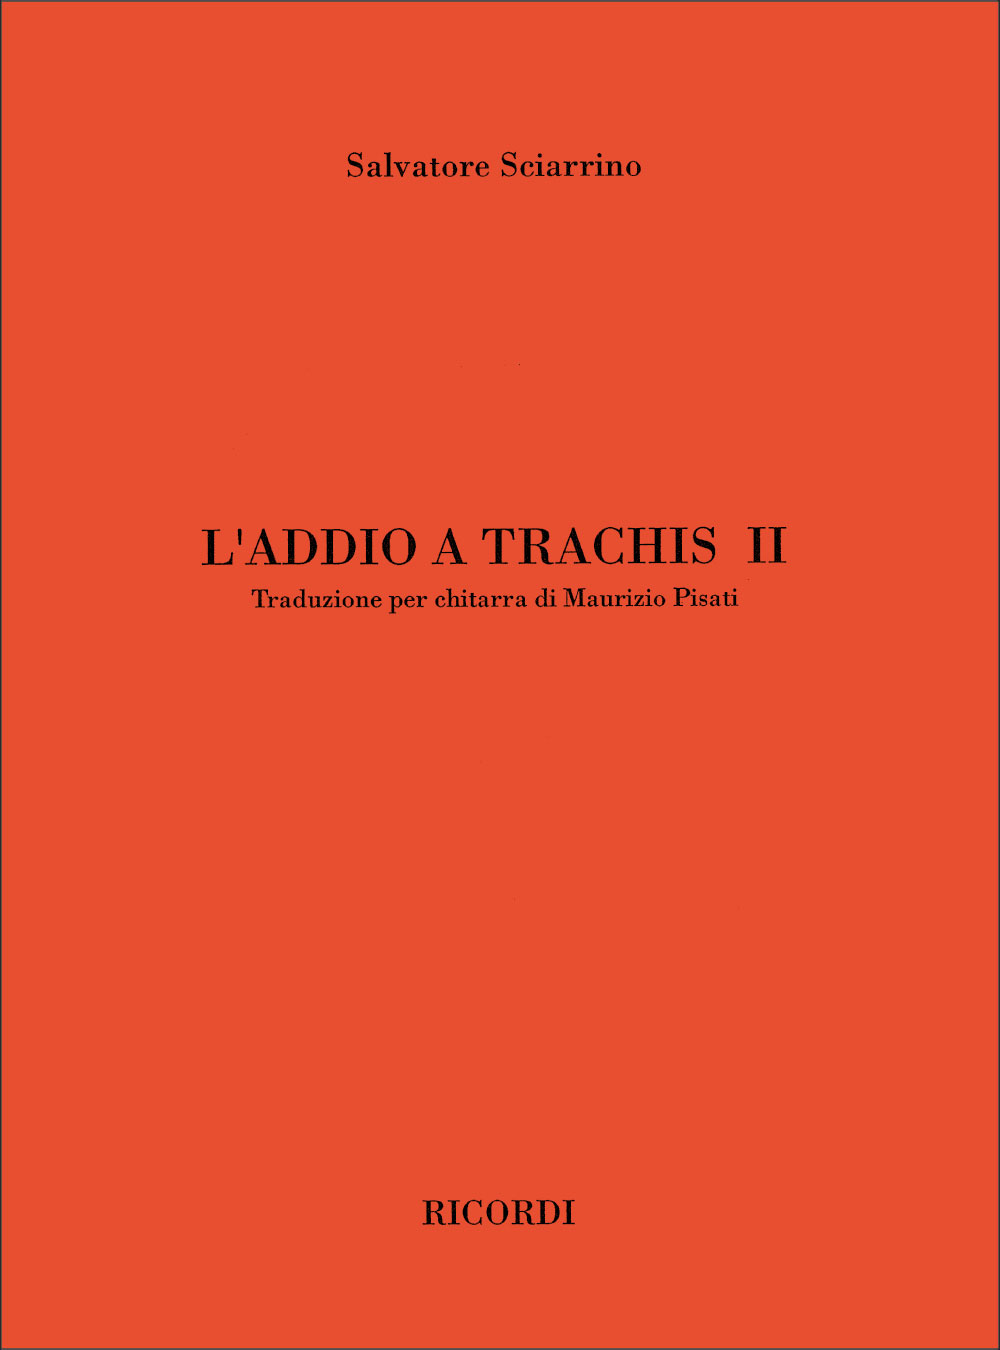 RICORDI SCIARRINO S. - L'ADDIO A TRACHIS II - GUITARE